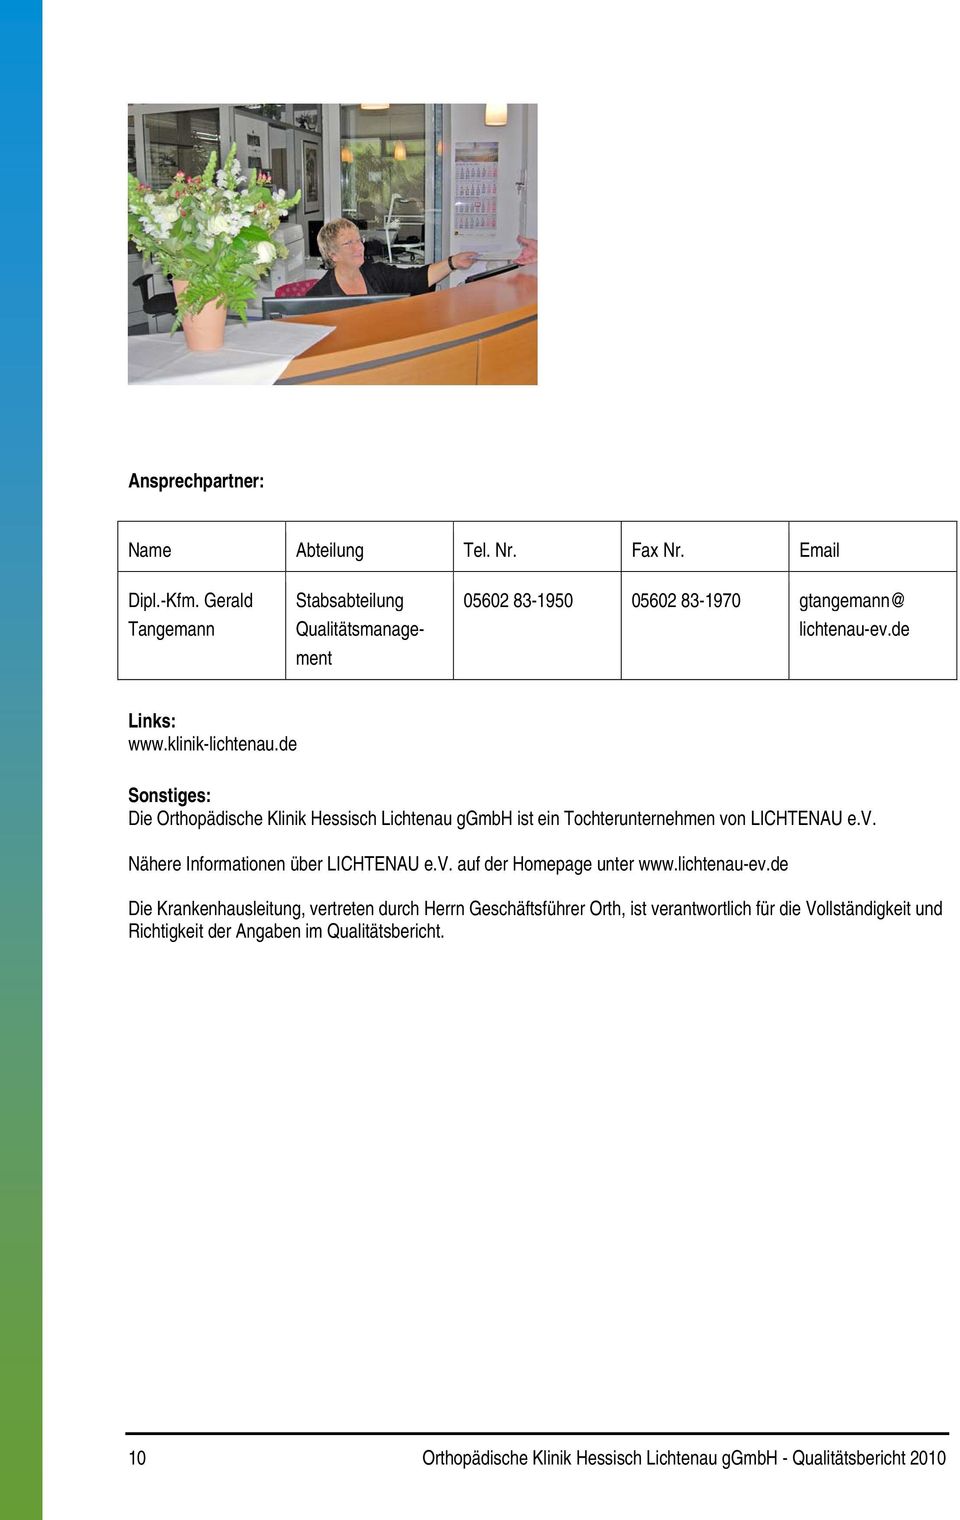 de Sonstiges: Die Orthopädische Klinik Hessisch Lichtenau ggmbh ist ein Tochterunternehmen von LICHTENAU e.v. Nähere Informationen über LICHTENAU e.v. auf der Homepage unter www.